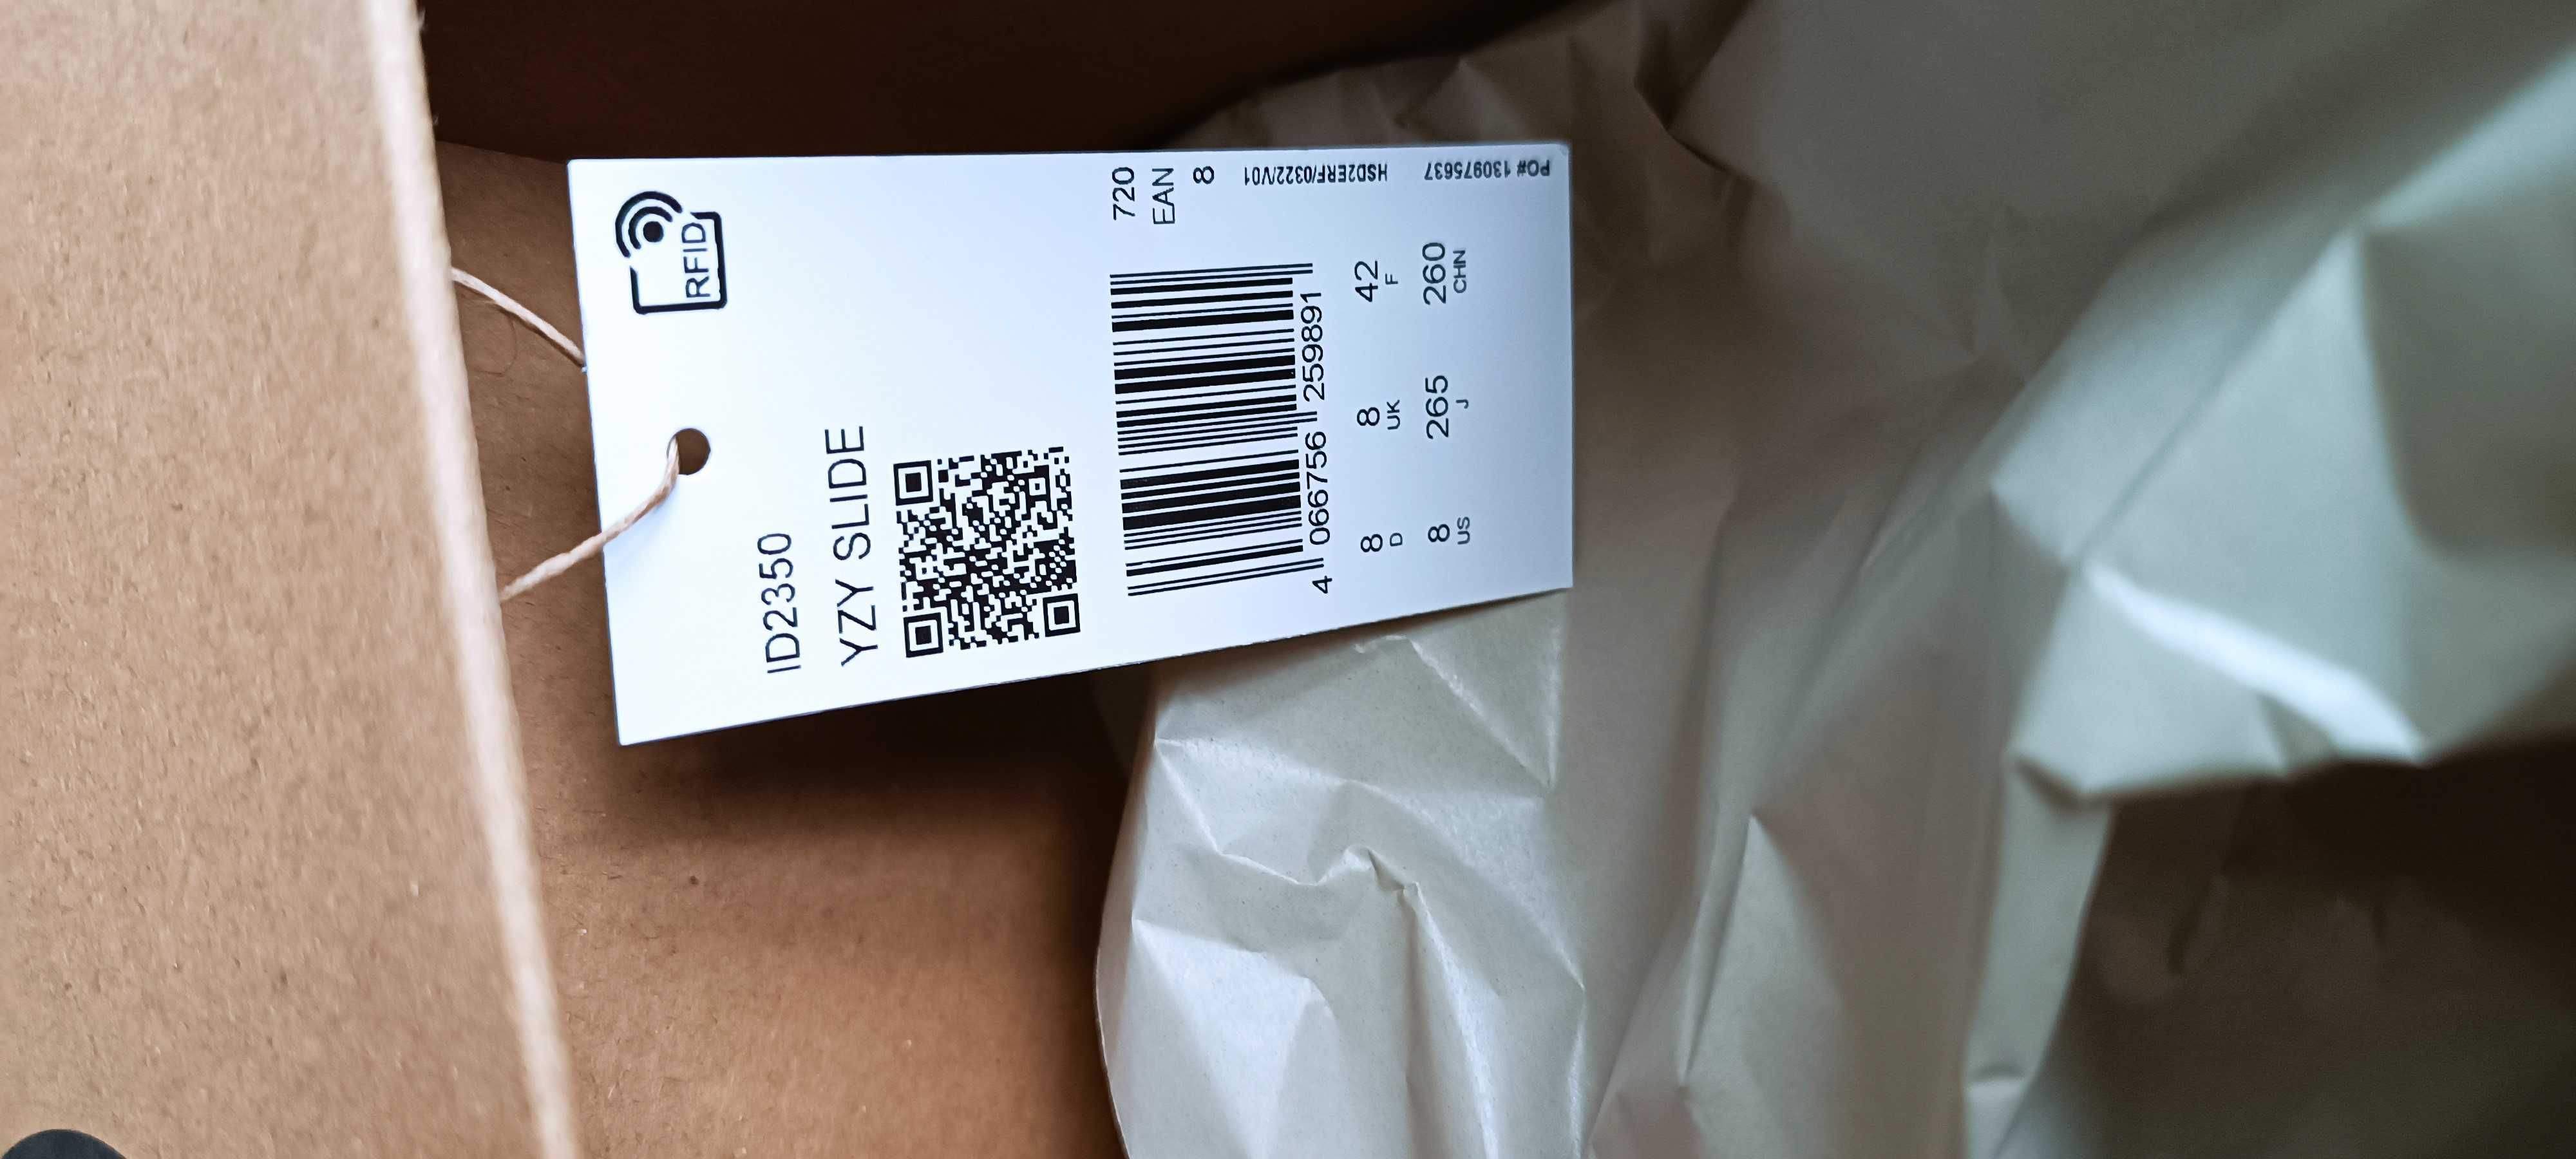 (r. Eur 42/ us8) Adidas Yeezy Slide Slate Grey ID2350 klapki